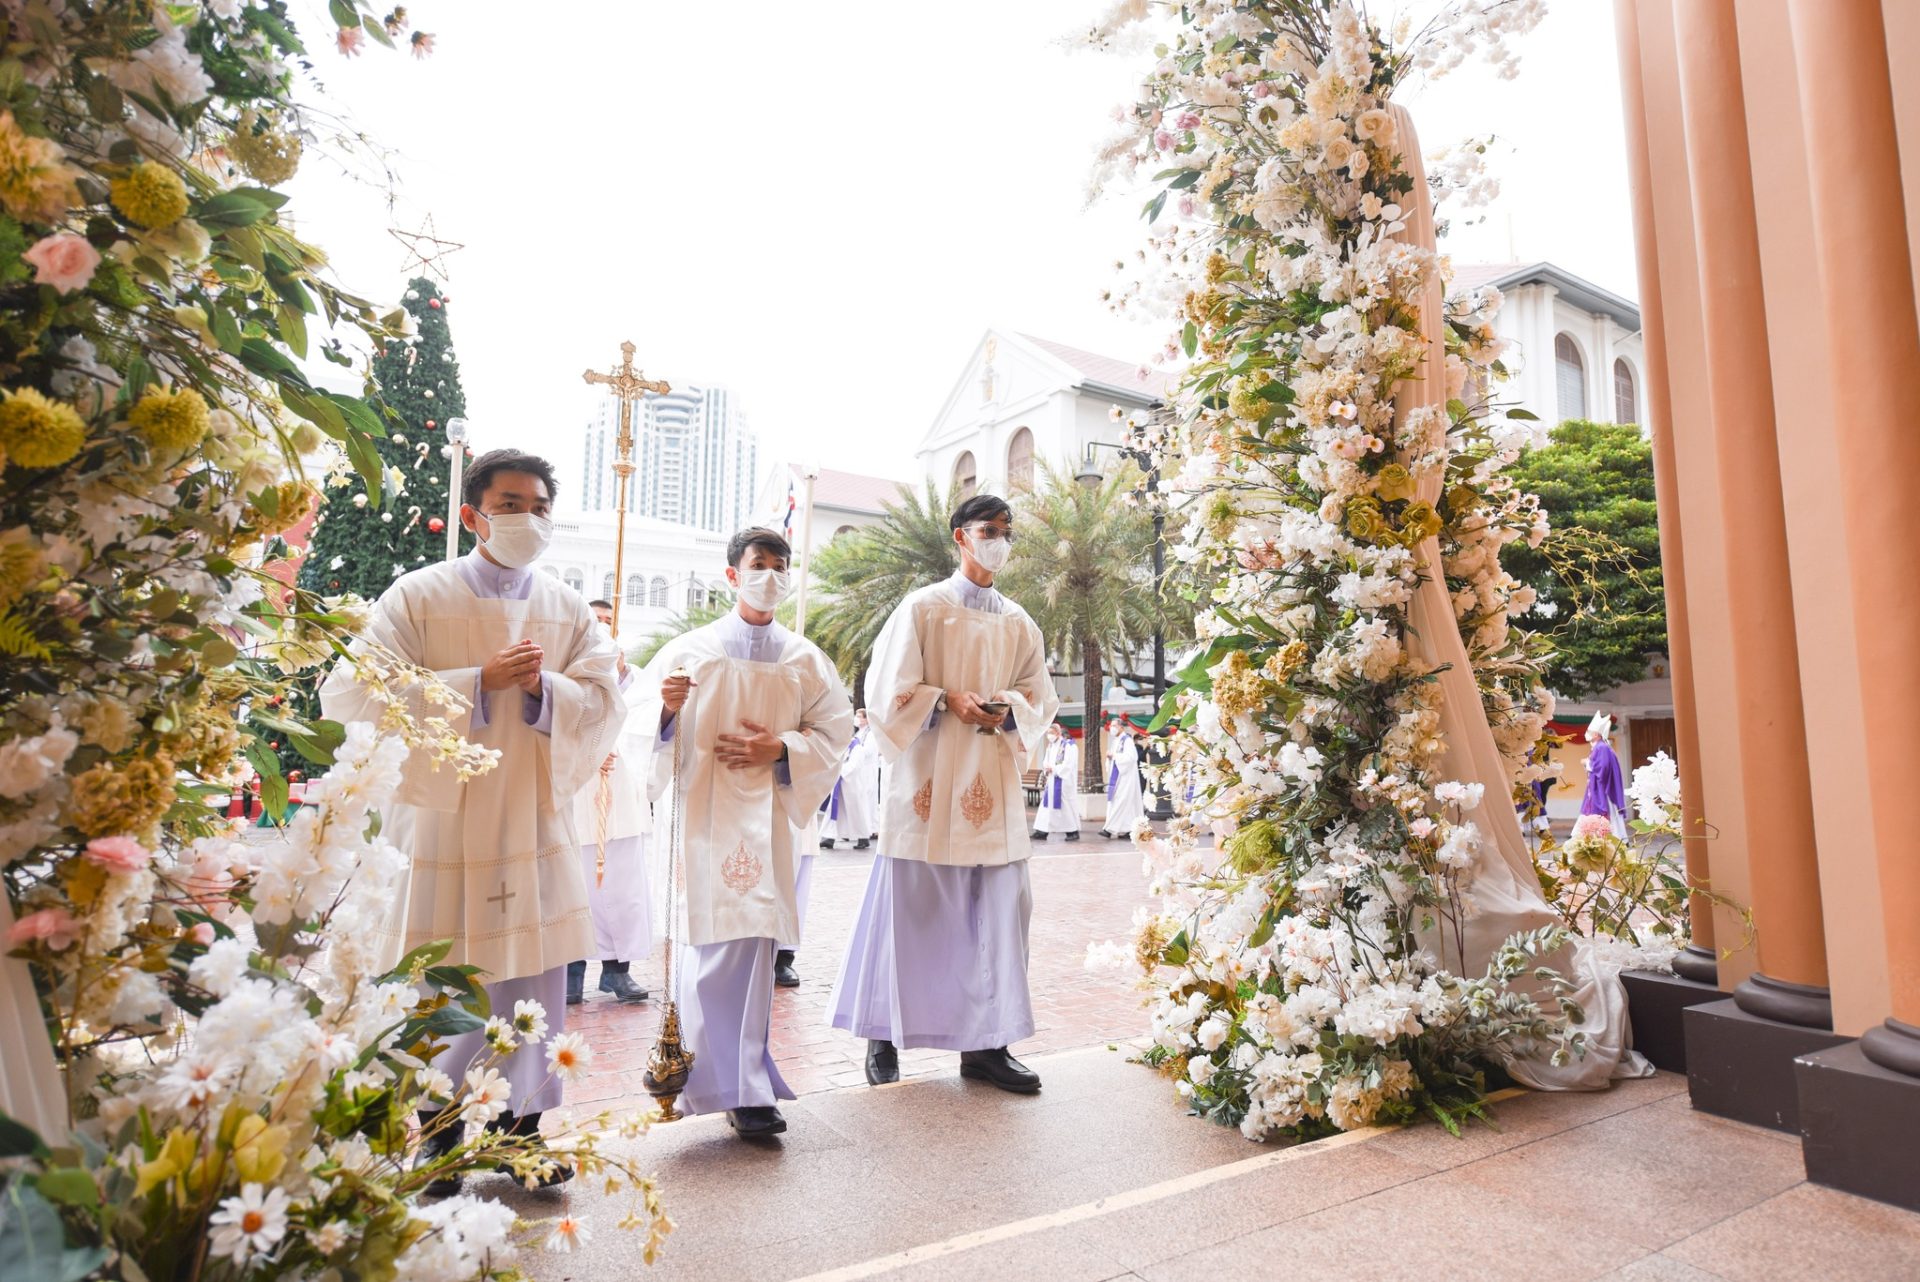 Entrance procession at Assumption Cathedral, Bangkok